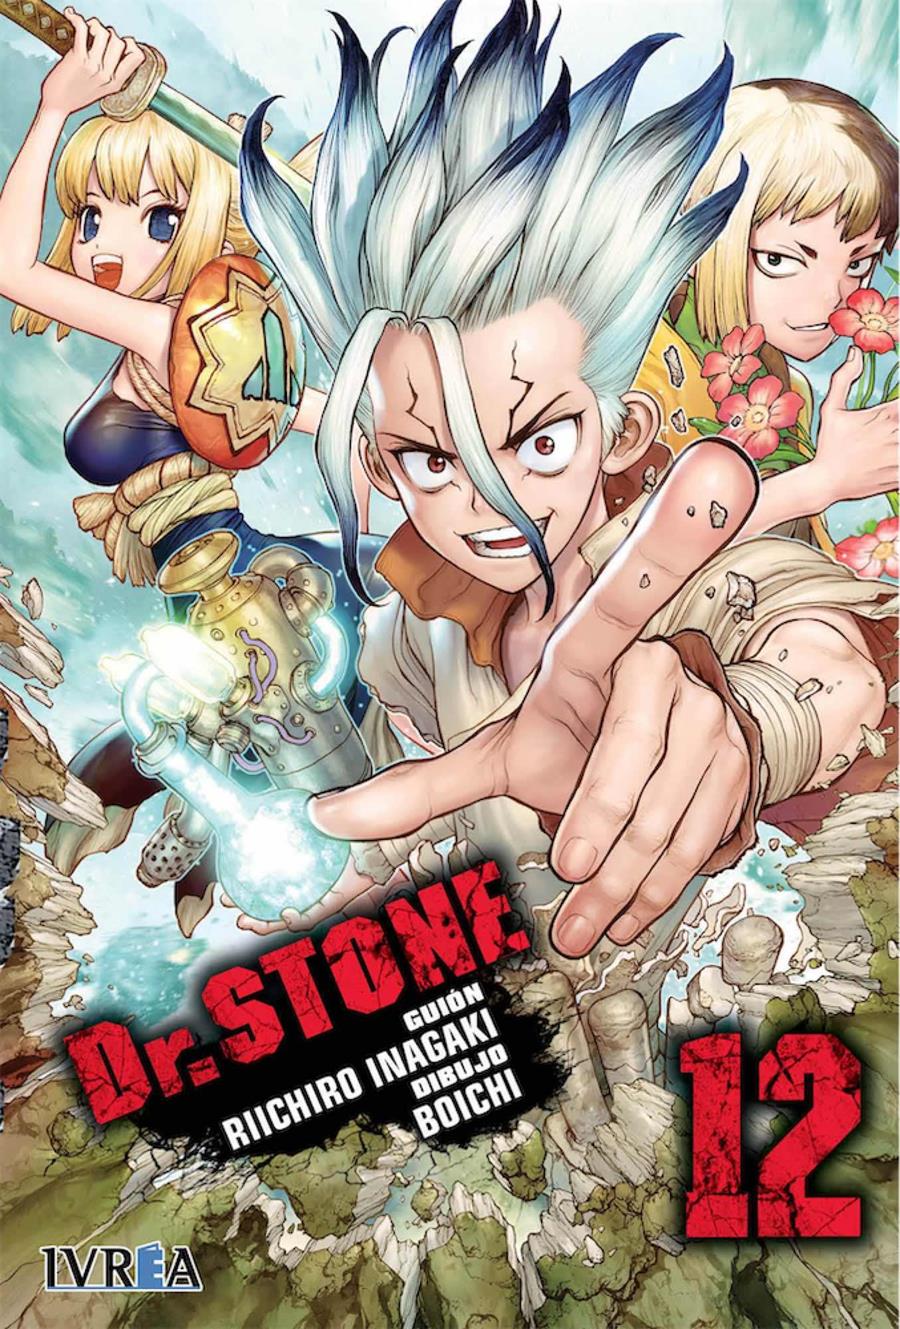 Dr. Stone 12 | N0320-IVR03 | Riichiro Inagaki, Boichi | Terra de Còmic - Tu tienda de cómics online especializada en cómics, manga y merchandising